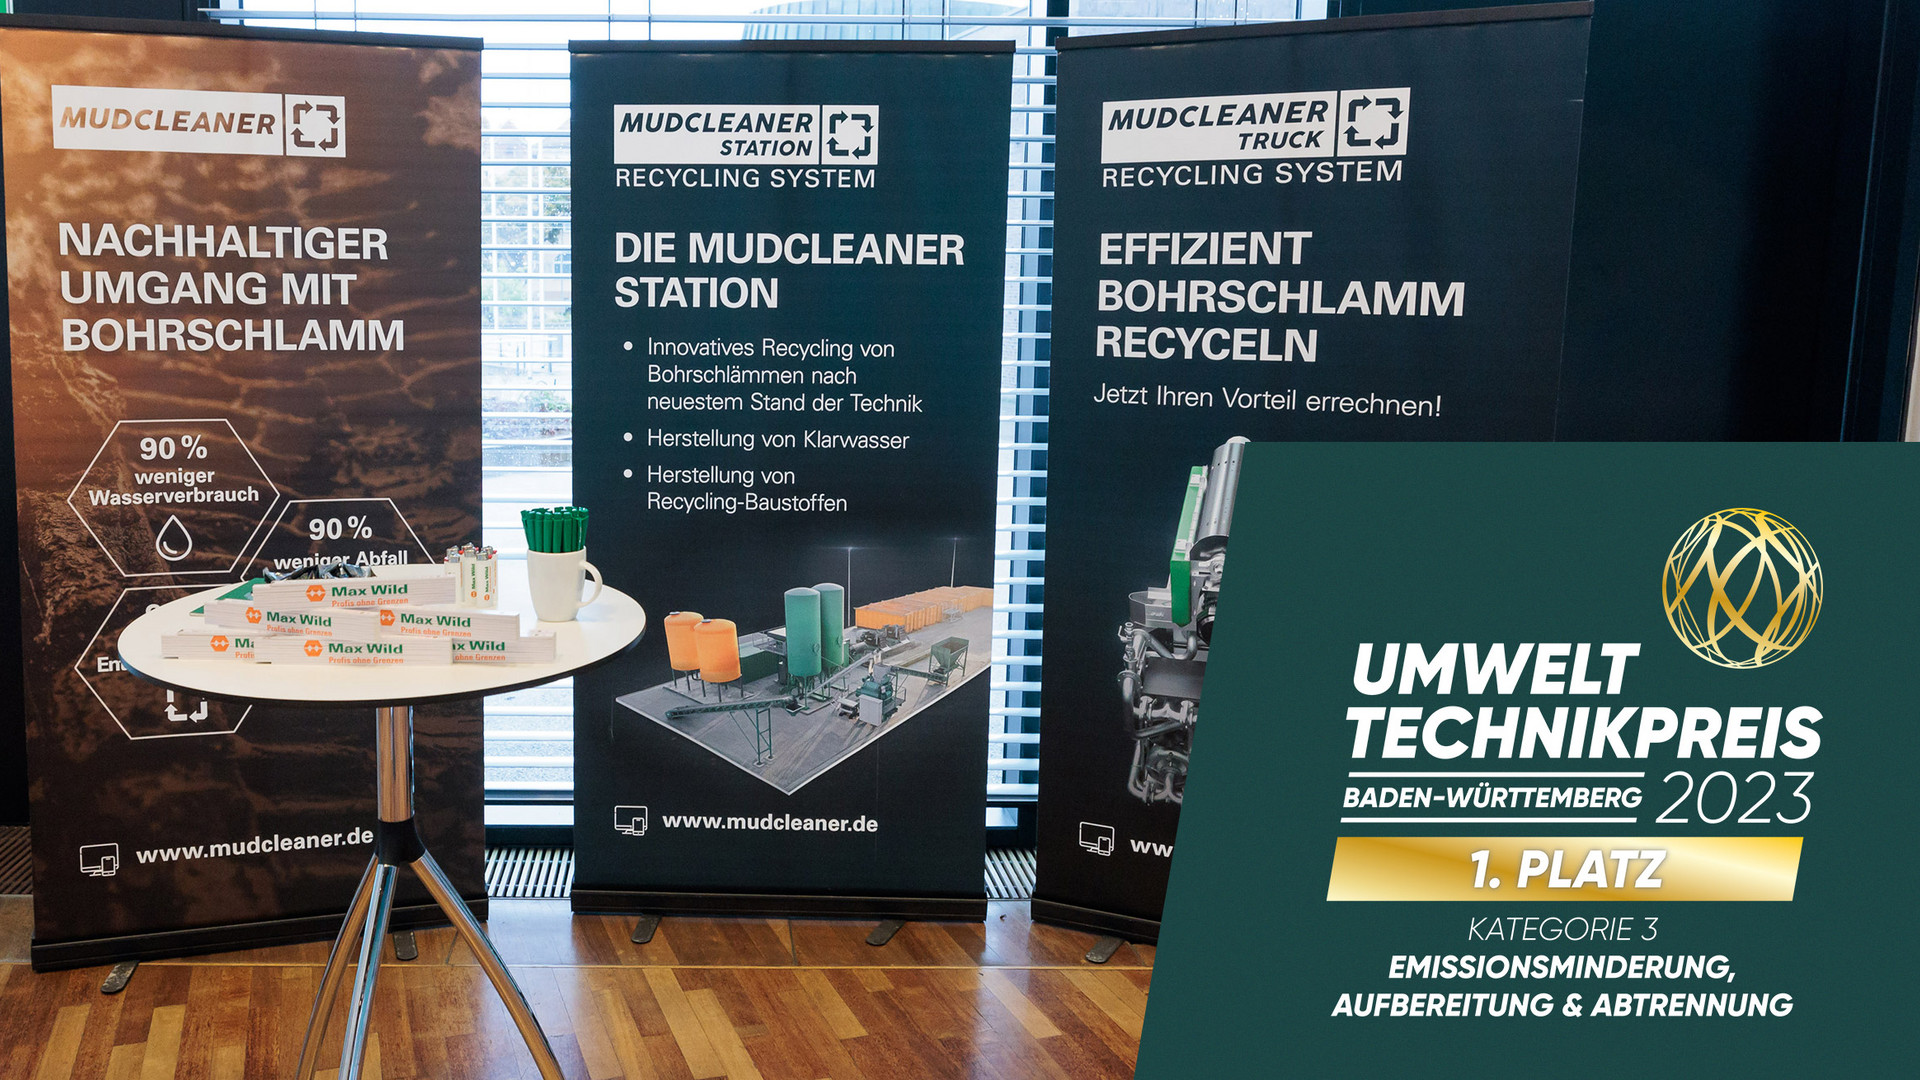 Der erste Platz in der Kategorie „Emissionsminderung, Aufbereitung & Abtrennung“ ging an die Max Wild GmbH für ihr Produkt Mudcleaner – ressourcenschonendes Recycling von Bohrschlamm.